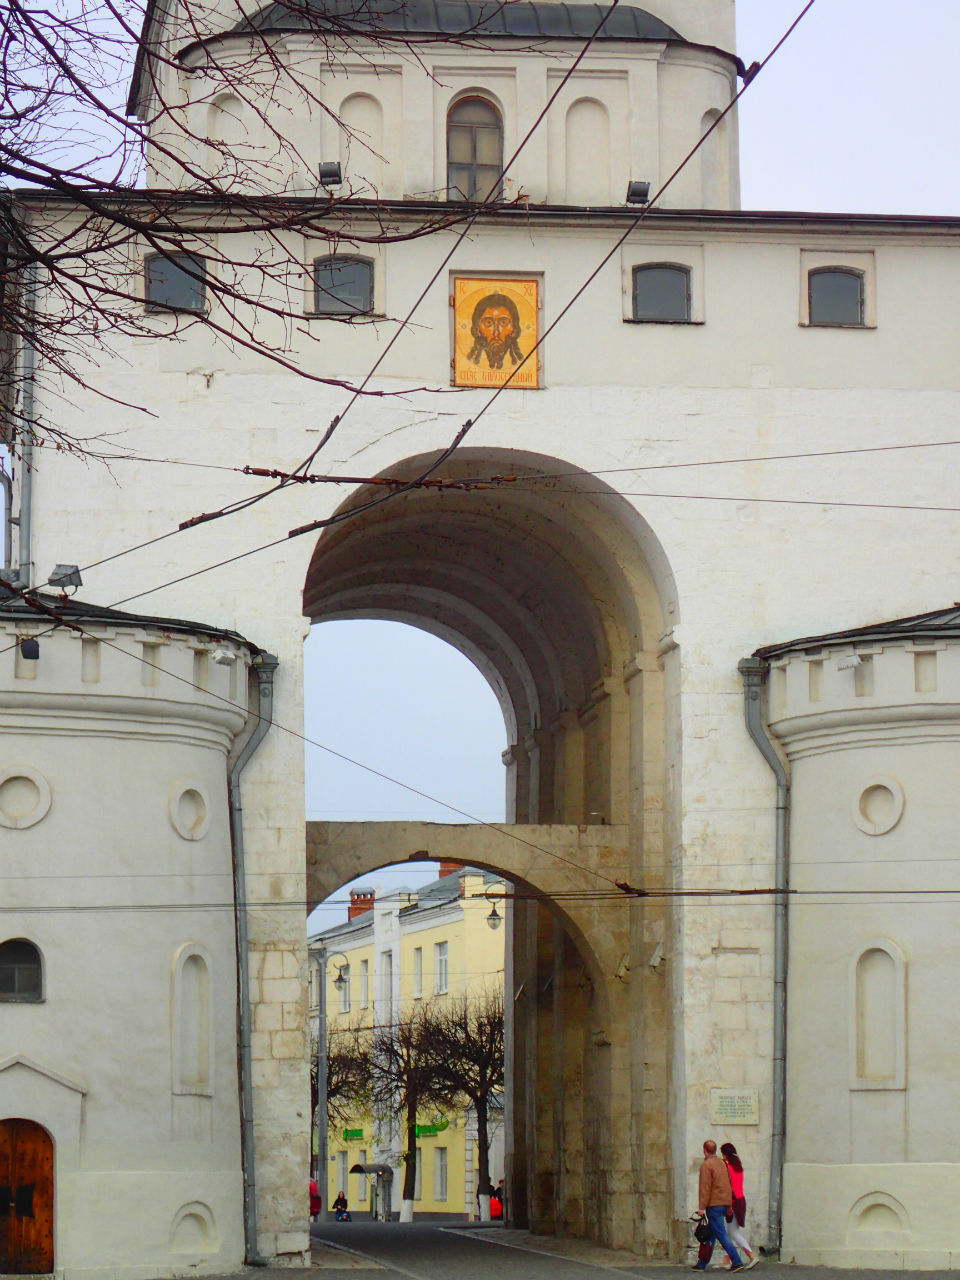 Троицкая старообрядческая церковь и Золотые ворота Владимира Владимир, Россия